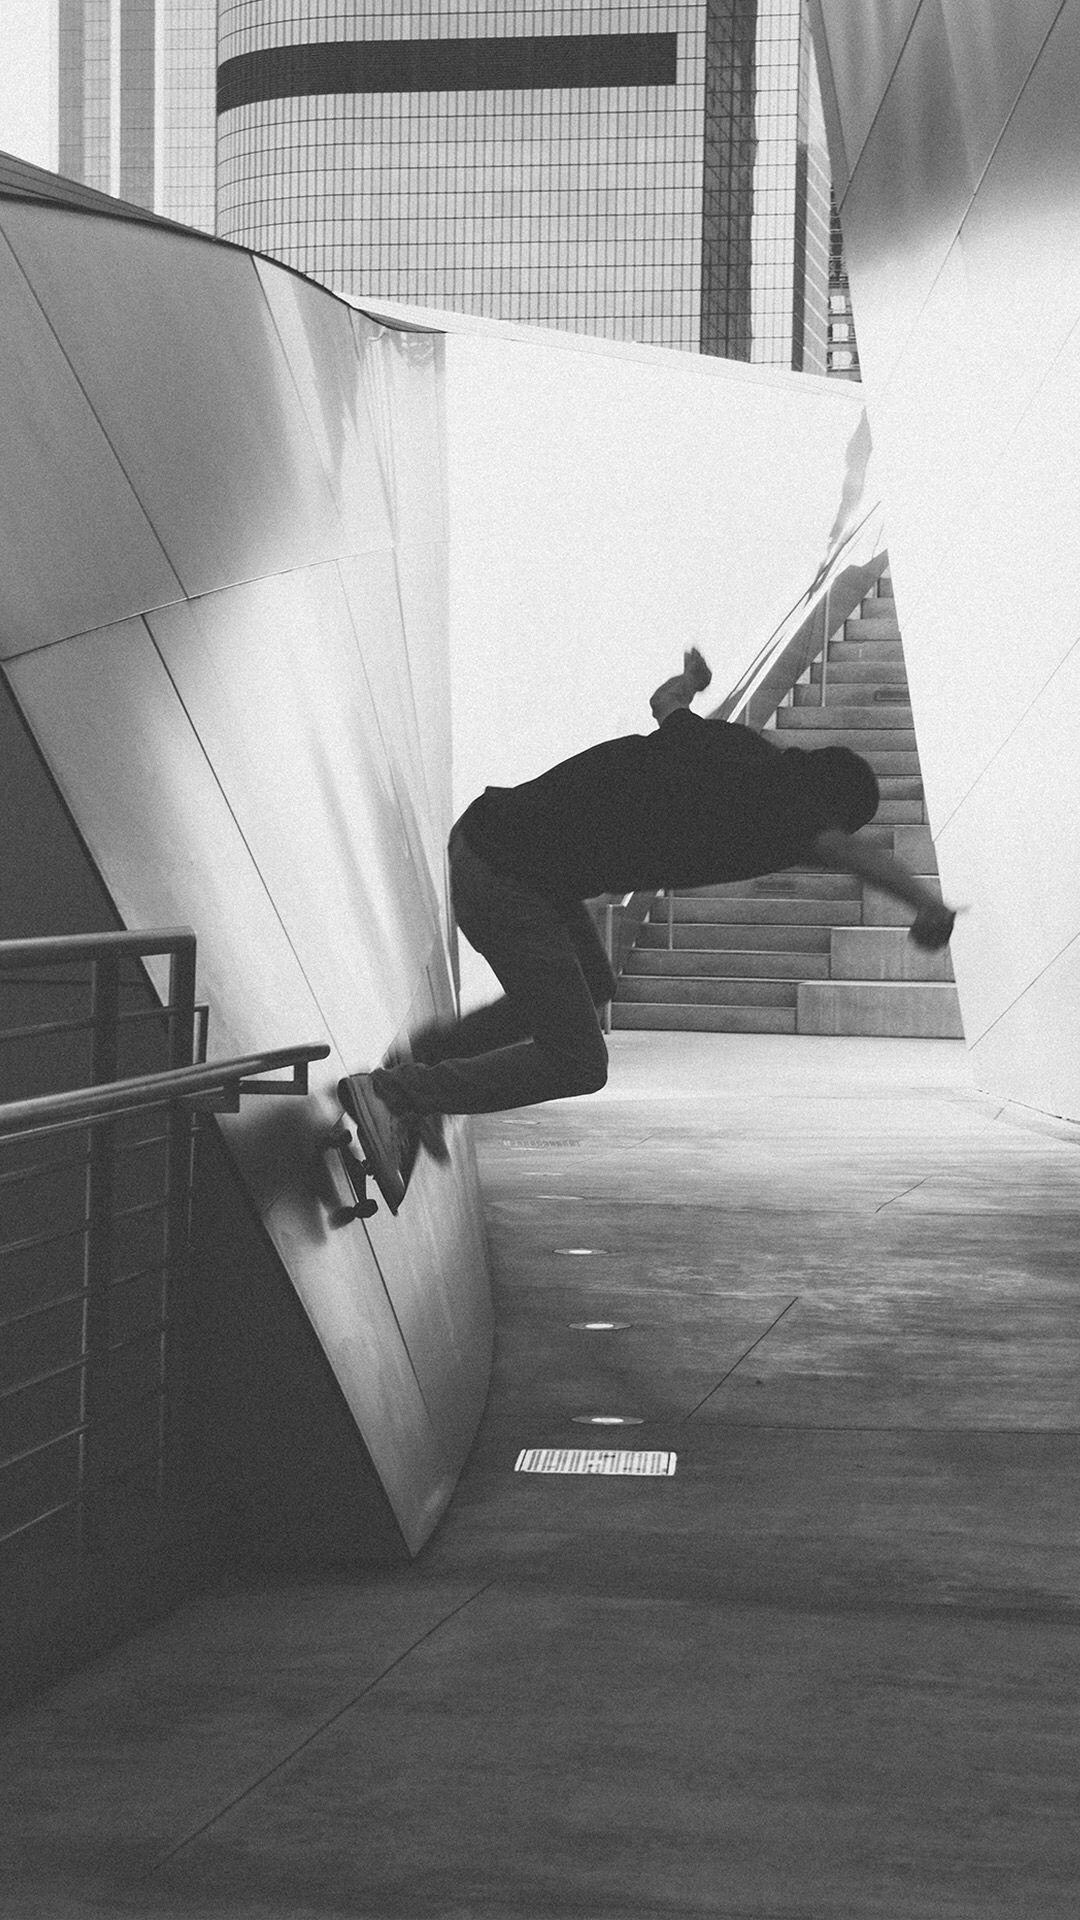 Skateboard Wallpaper Black And White